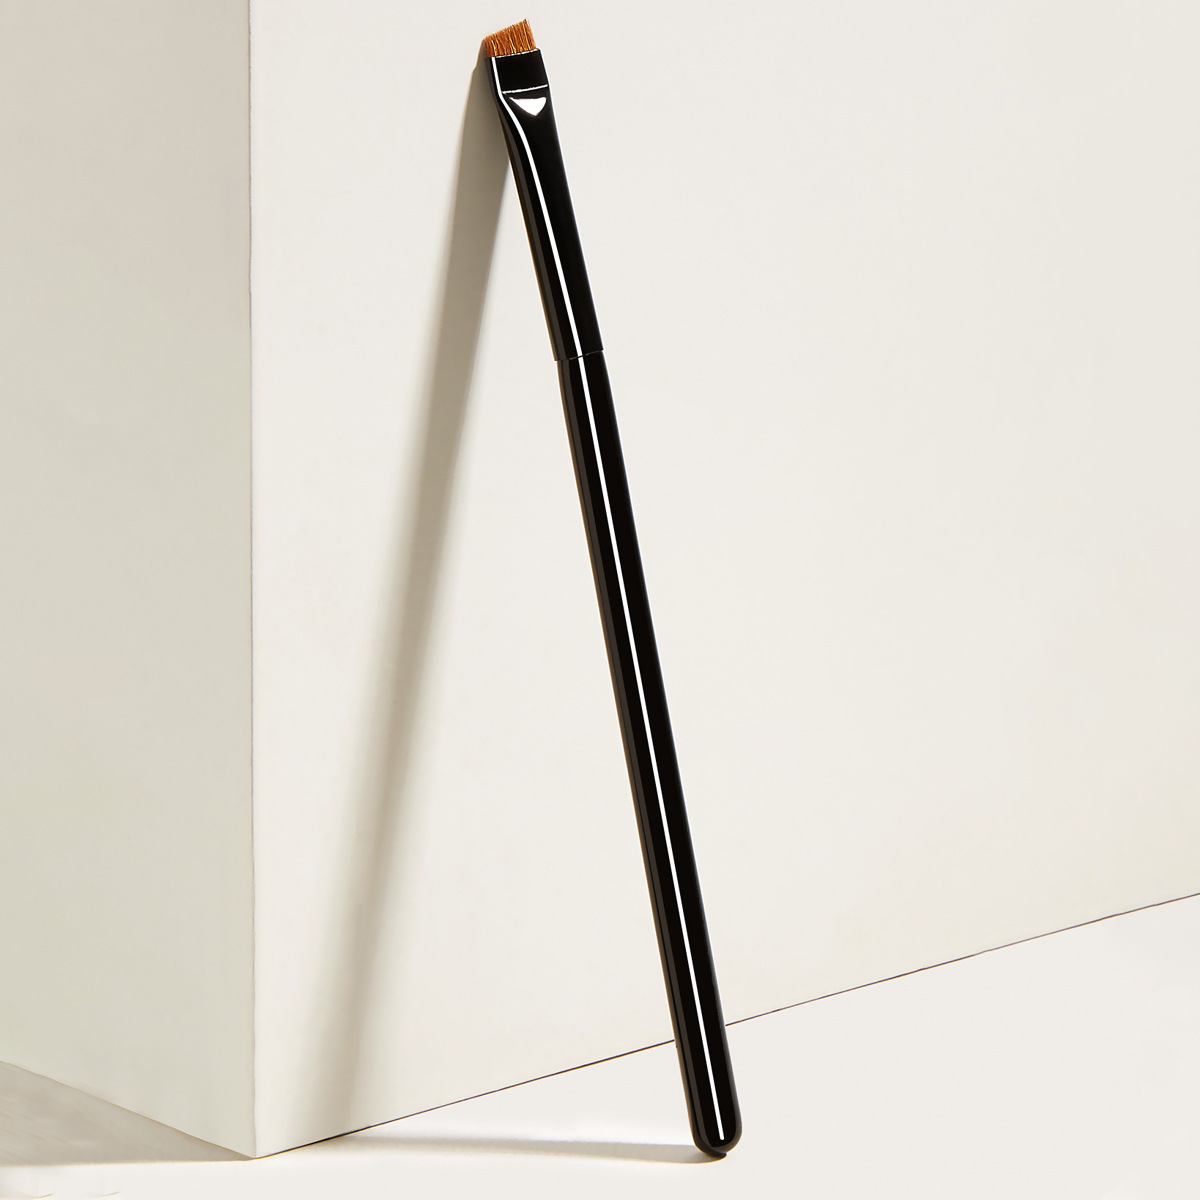 Pointed Crease Brushes Soft Black Colour Mini Eye Brush Sets